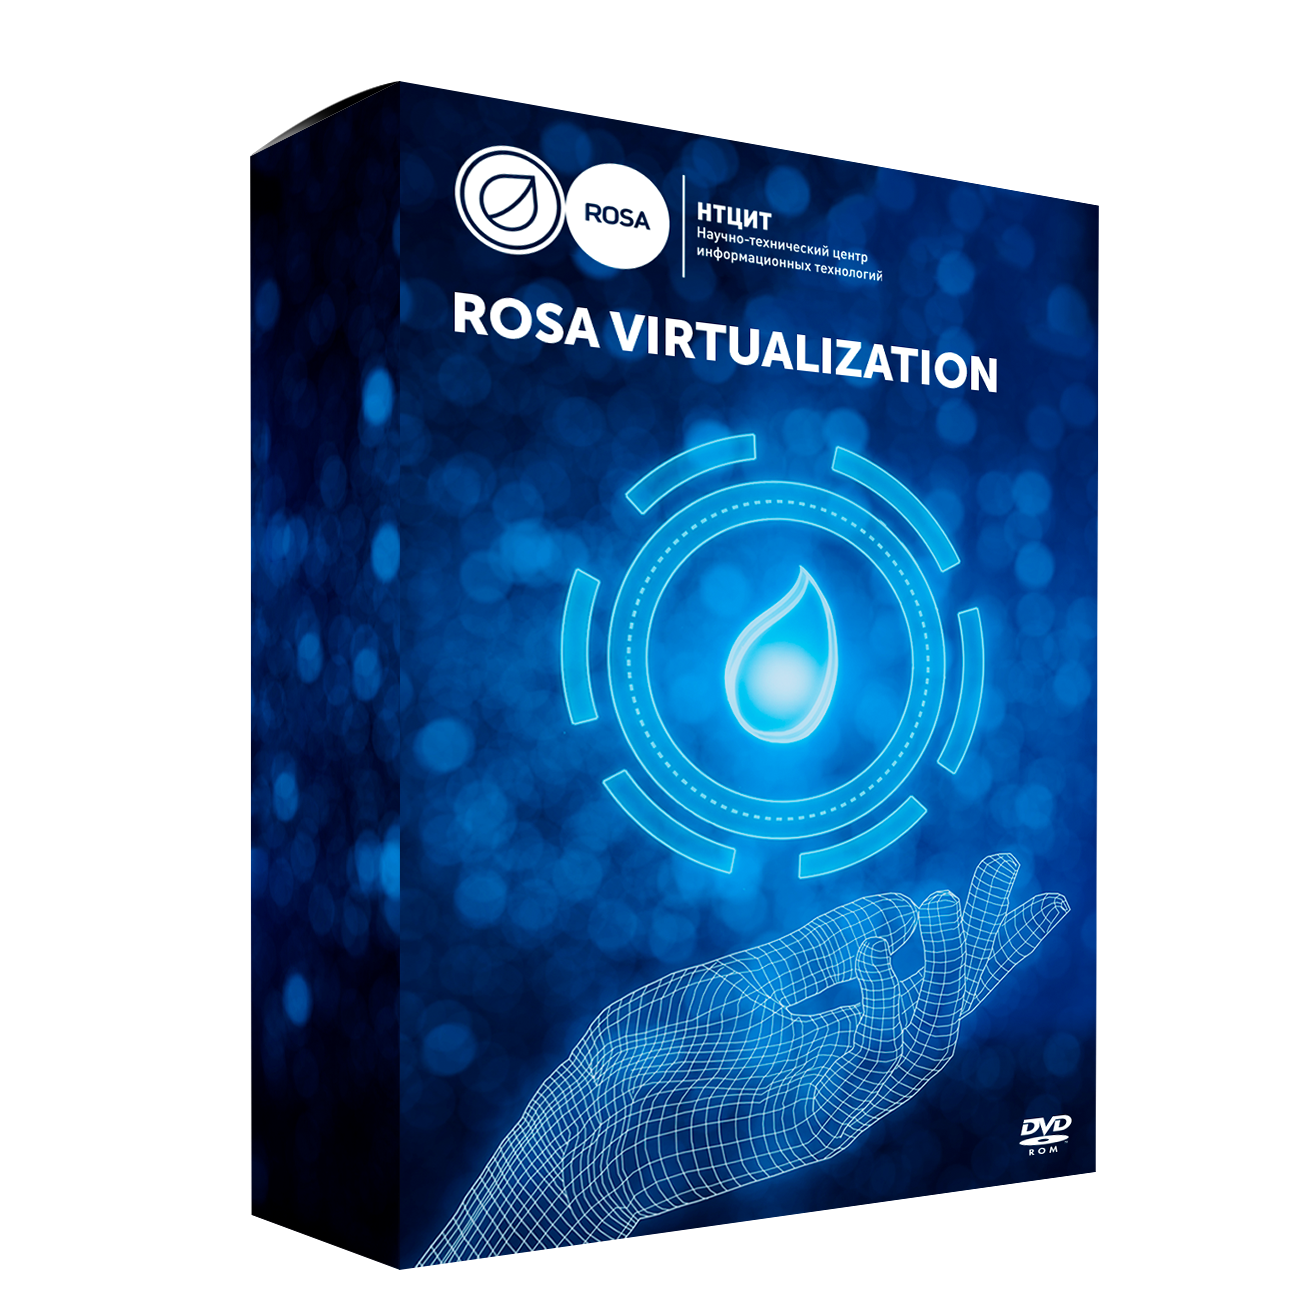 Сертификат продления стандартной технической поддержки для системы виртуализации ROSA Virtualization (25VM), сроком 1 год